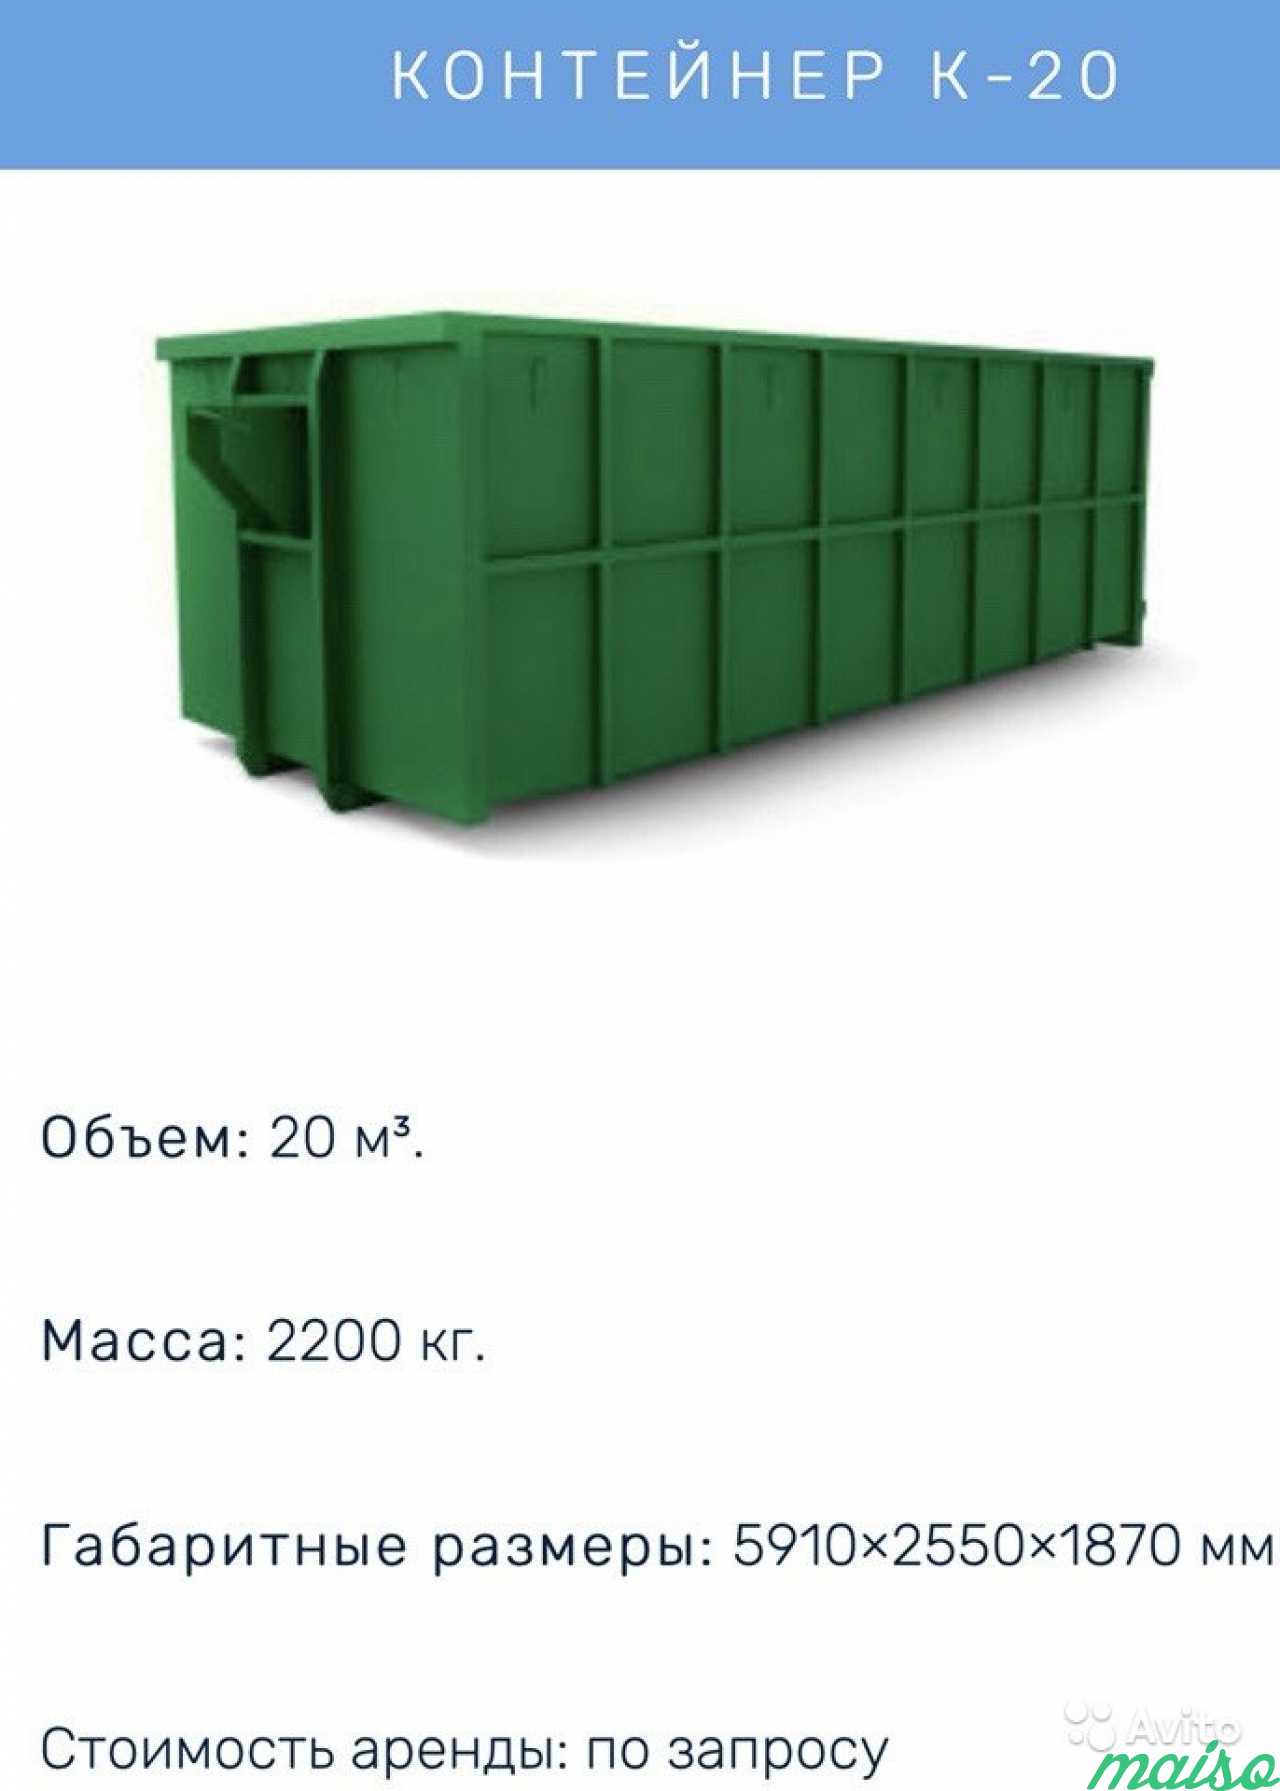 Аренда мусорных контейнеров и пухто в Санкт-Петербурге. Фото 1